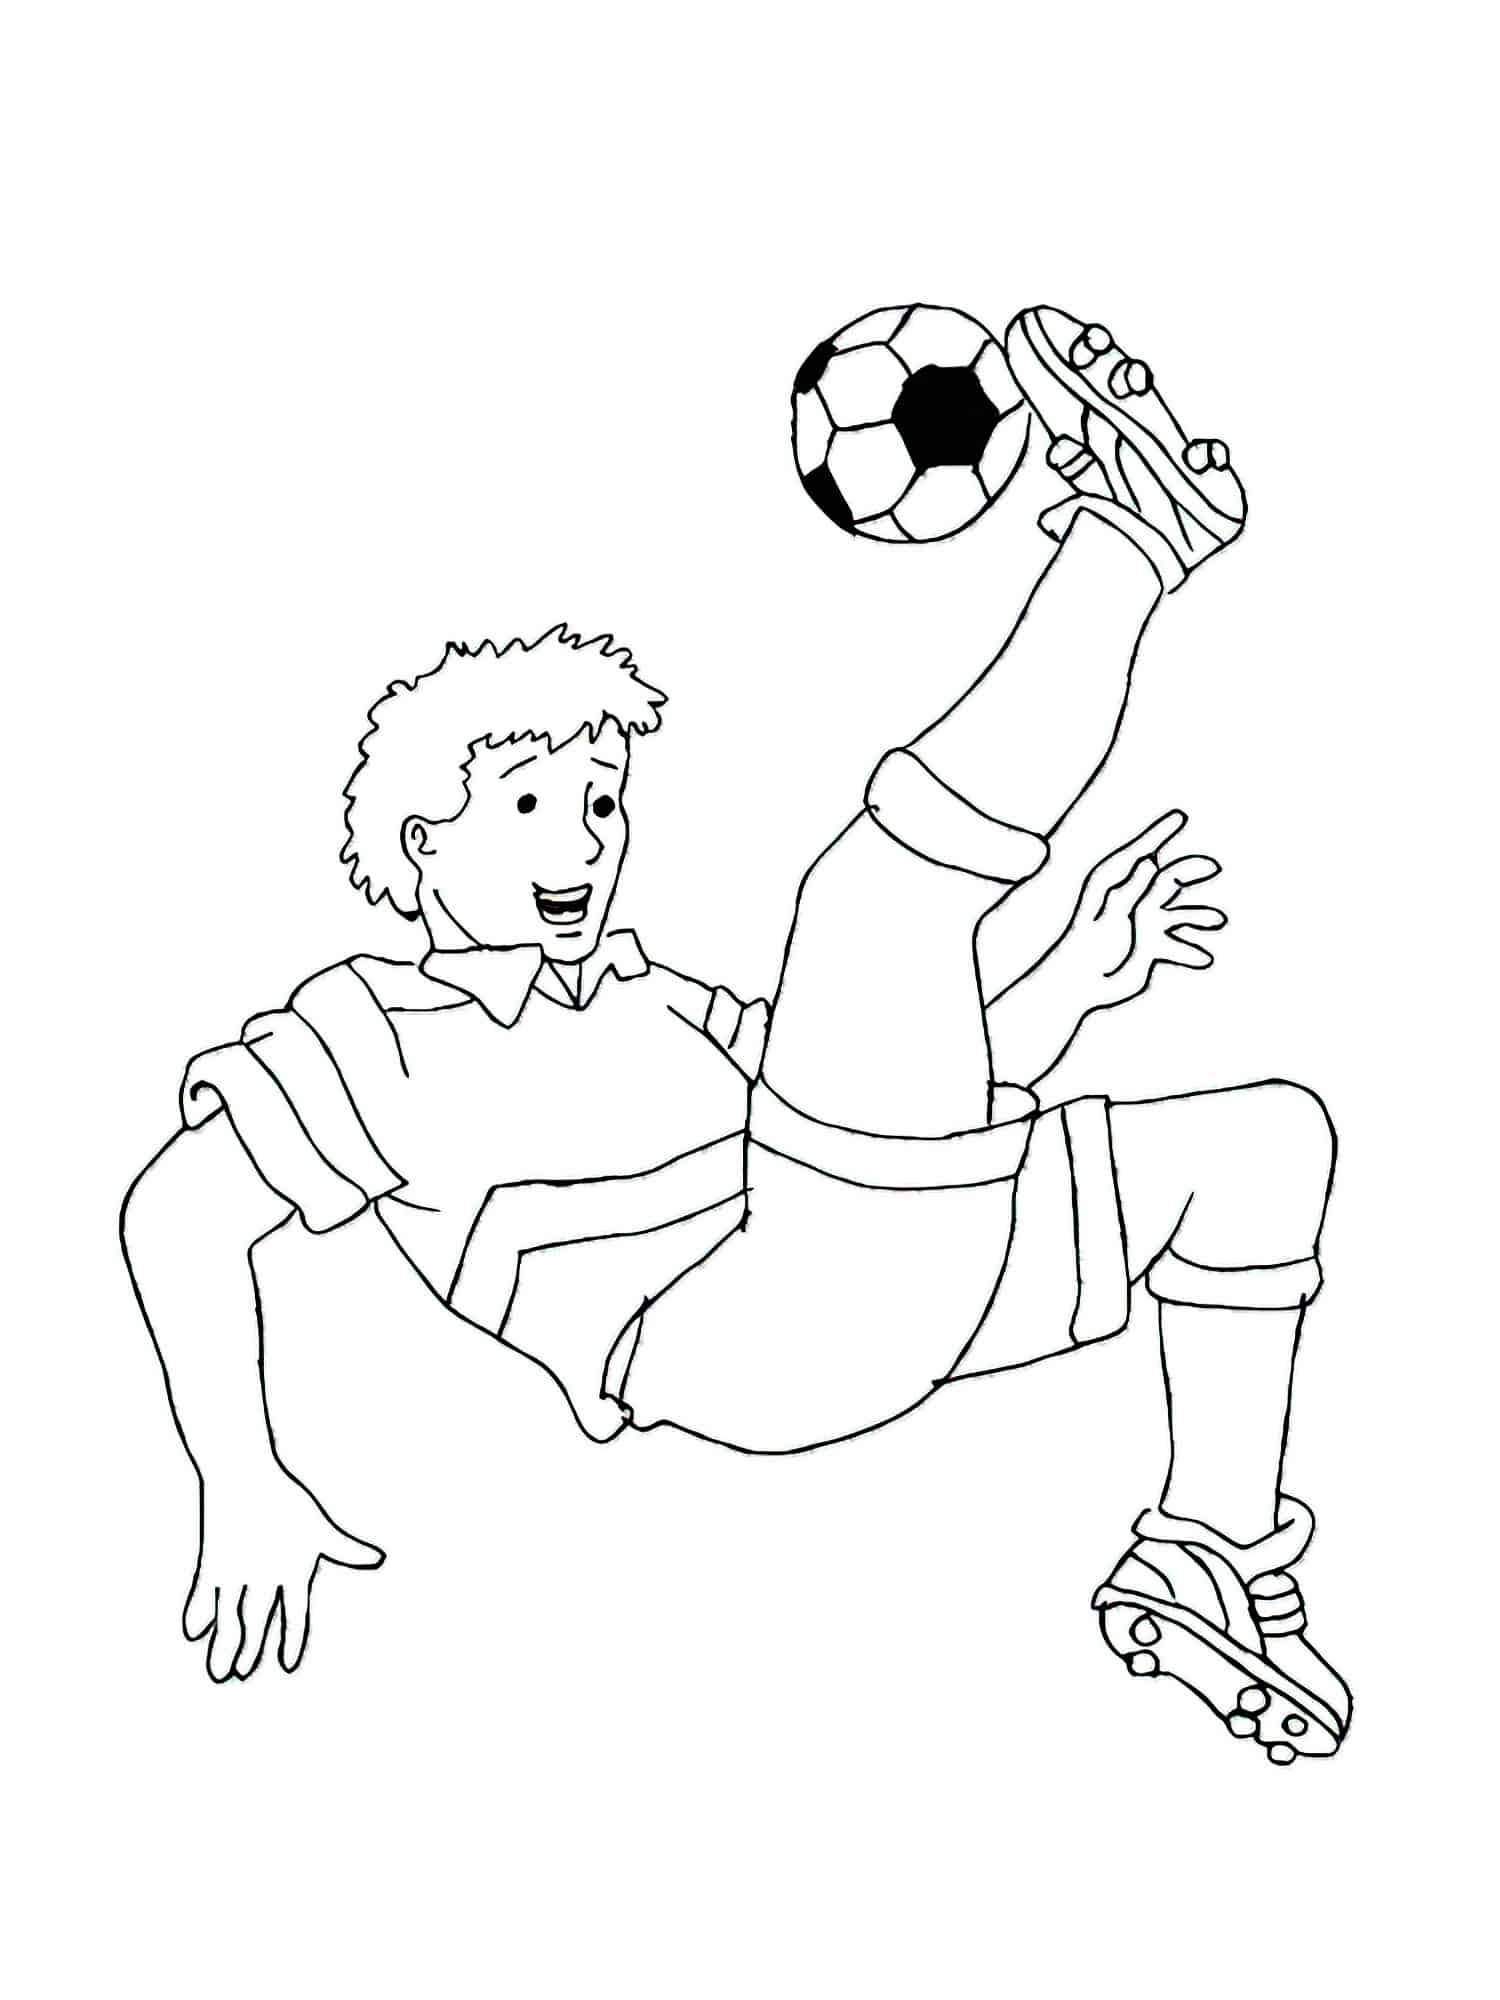 דף צביעה שחקן כדורגל מכה את הכדור ונופל